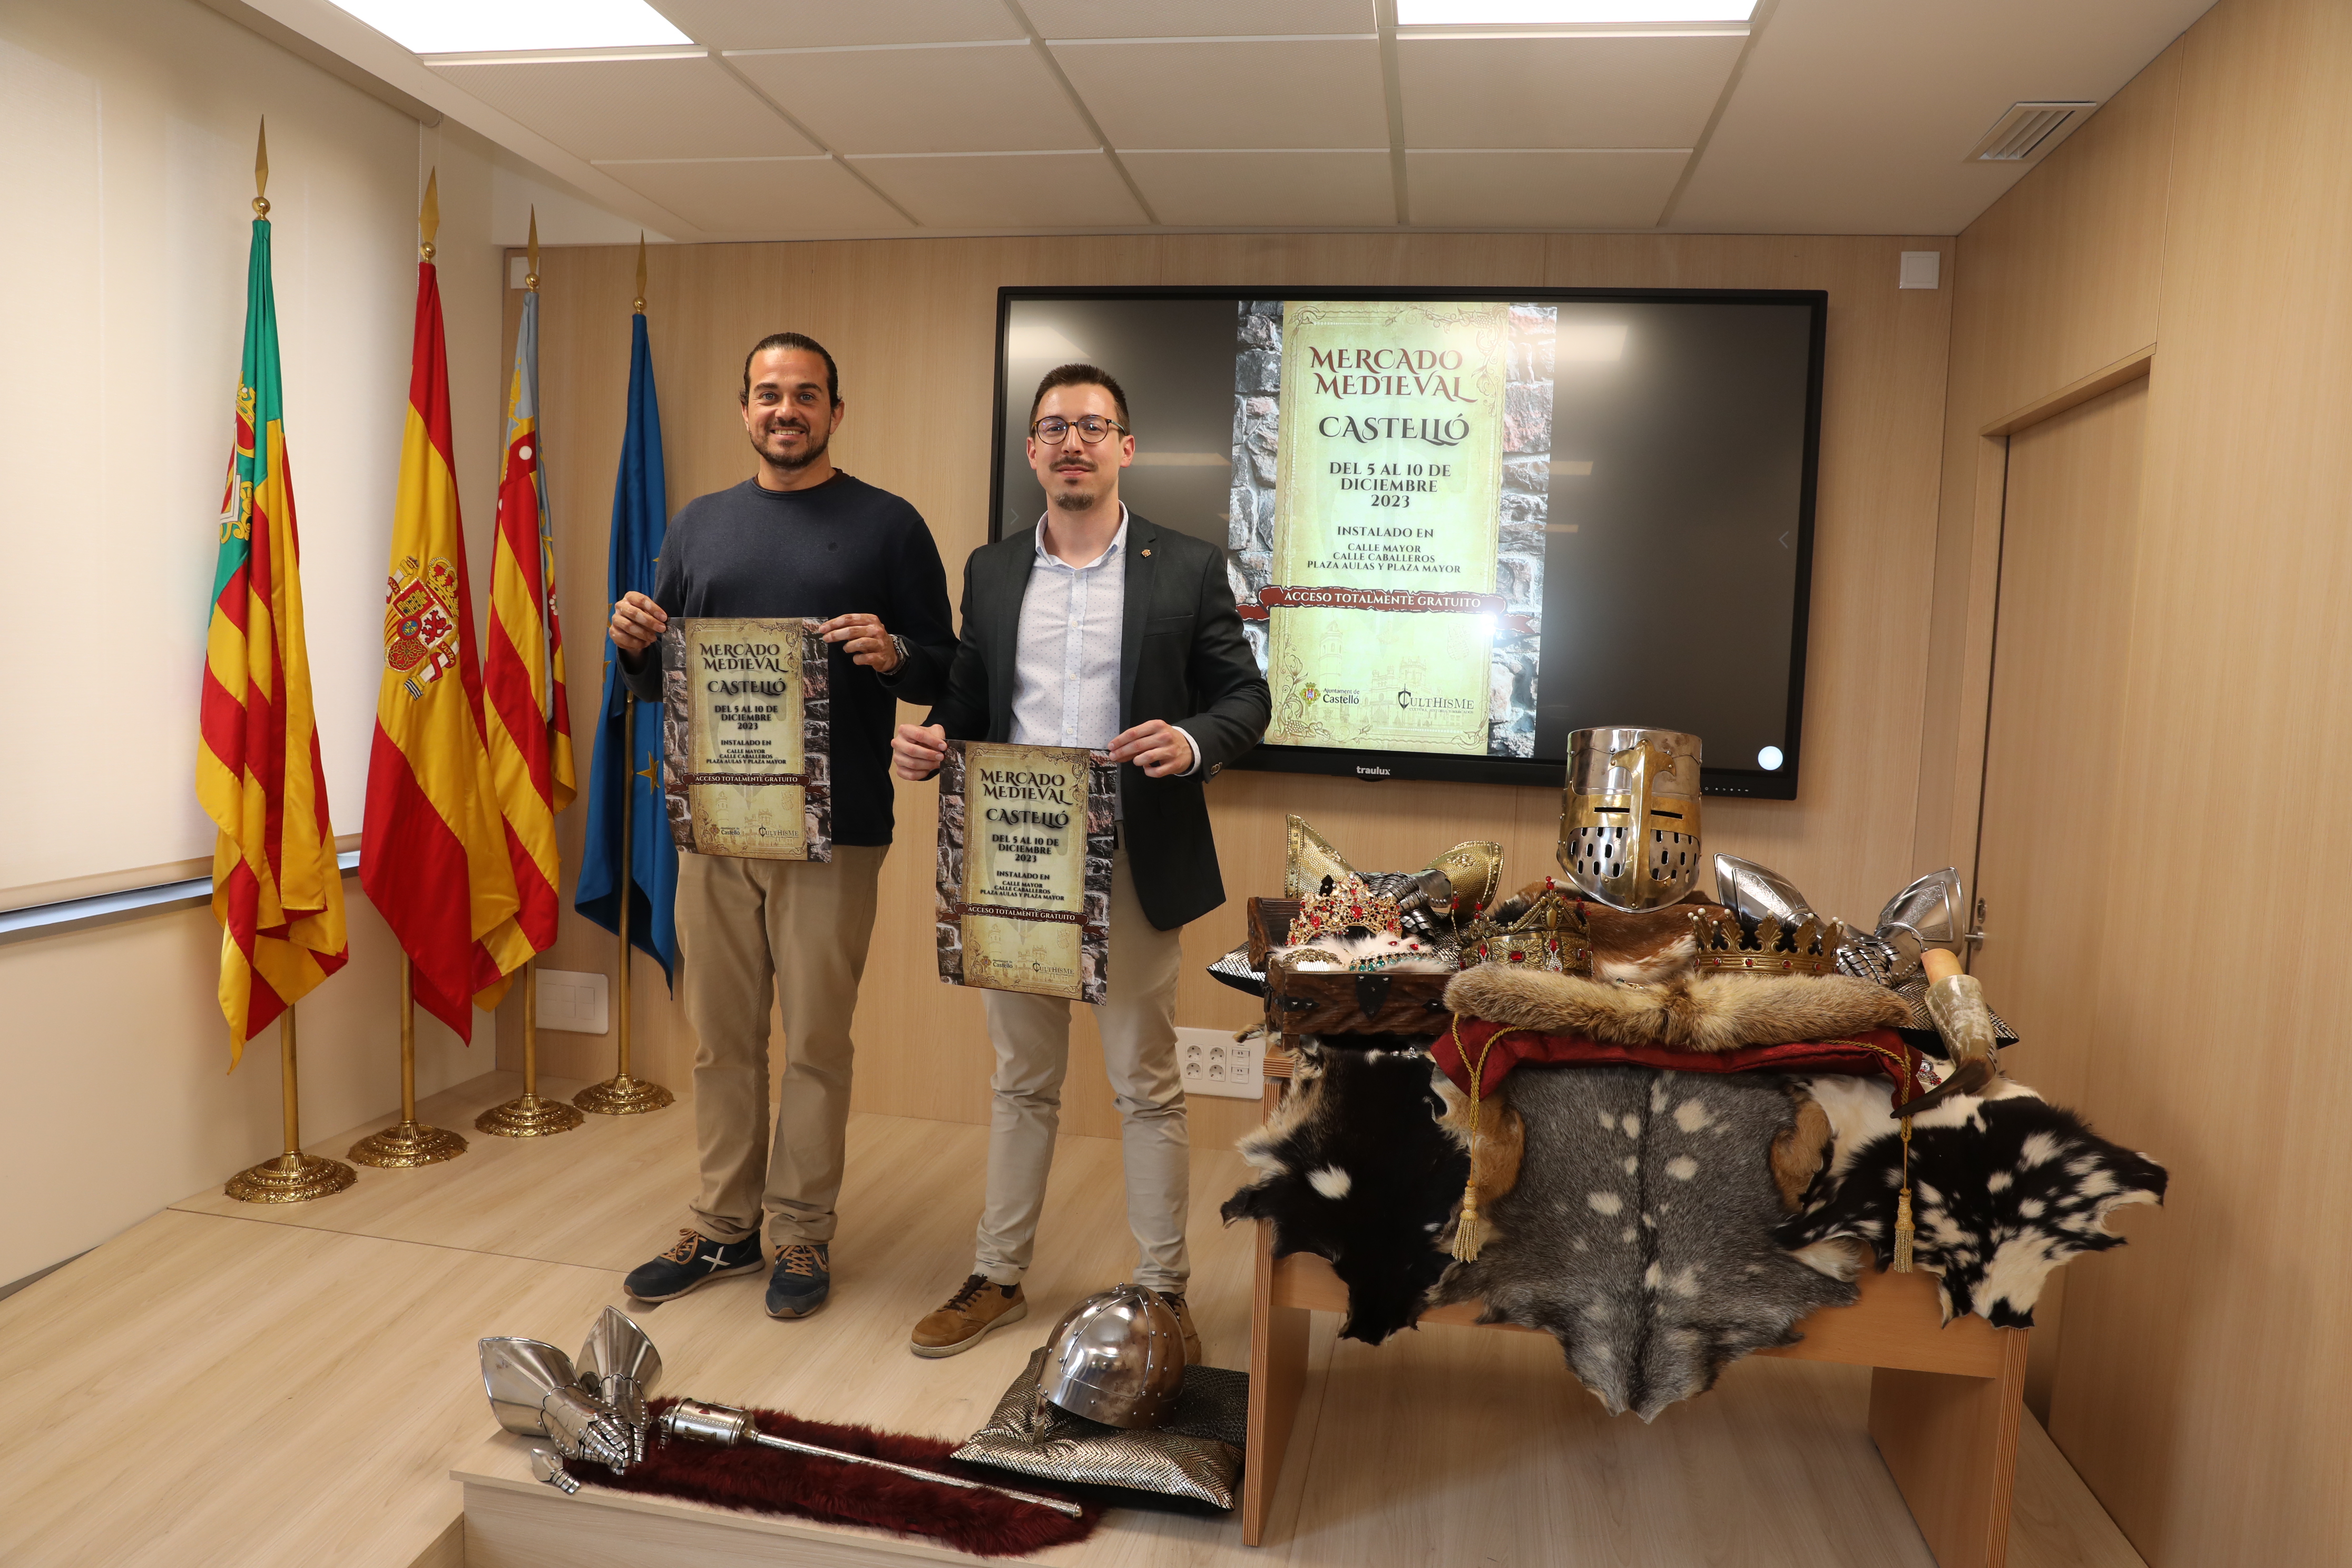 L'Ajuntament de Castelló presenta una nova edició del Mercat Medieval